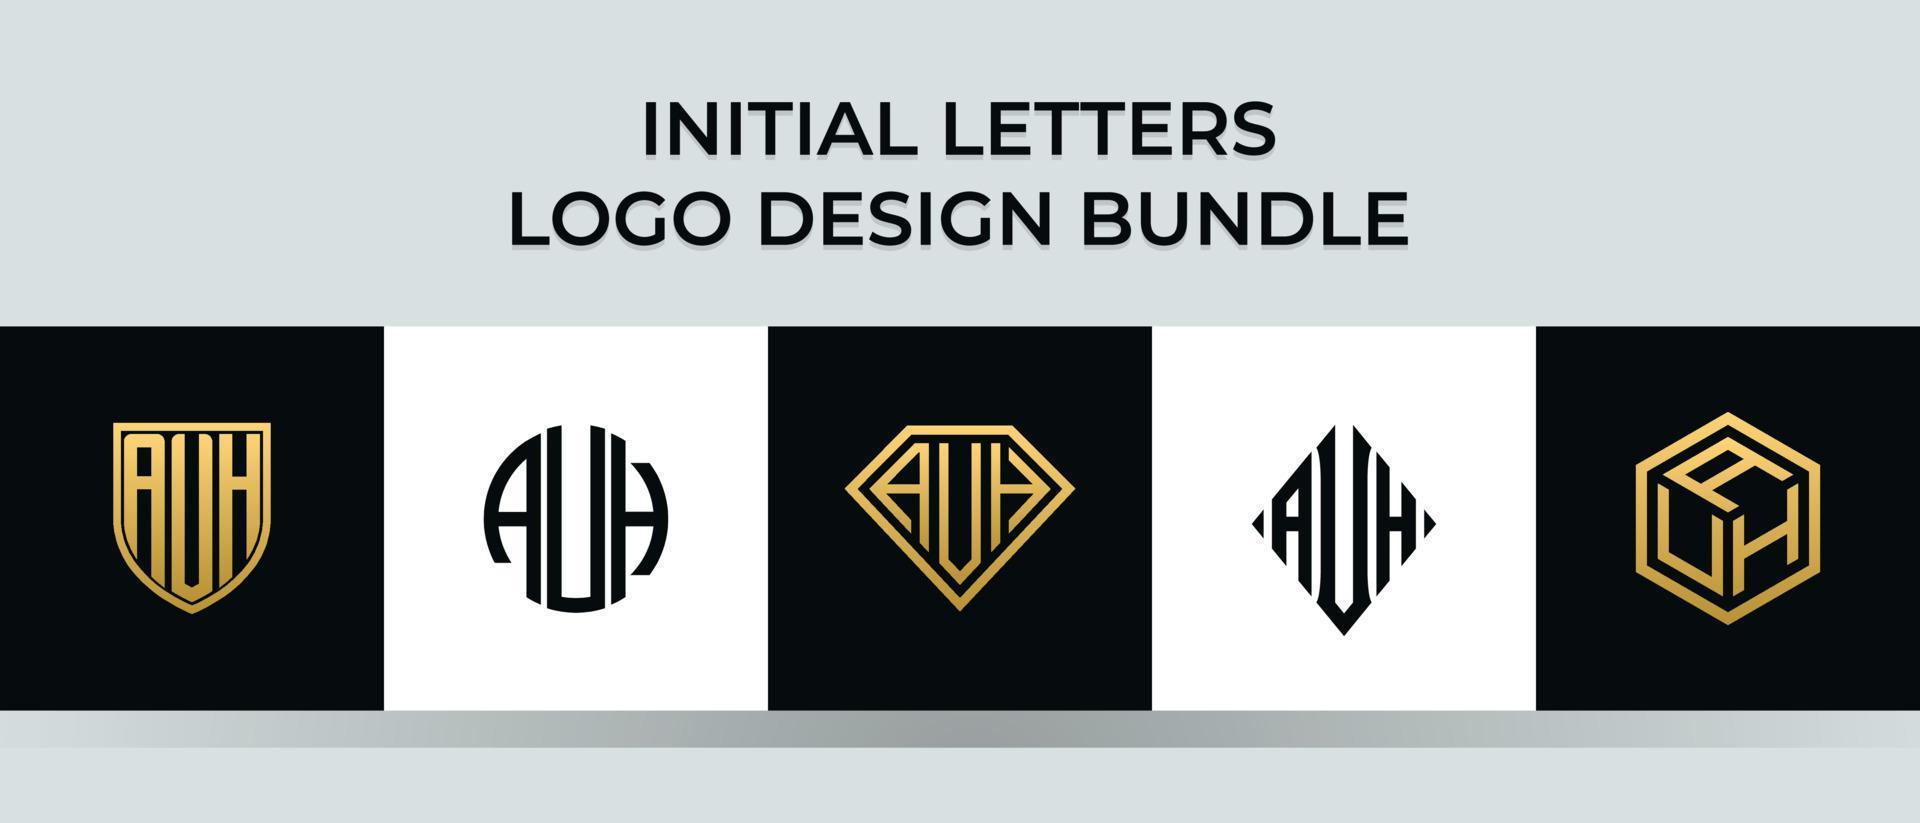 lettere iniziali auh logo design bundle vettore